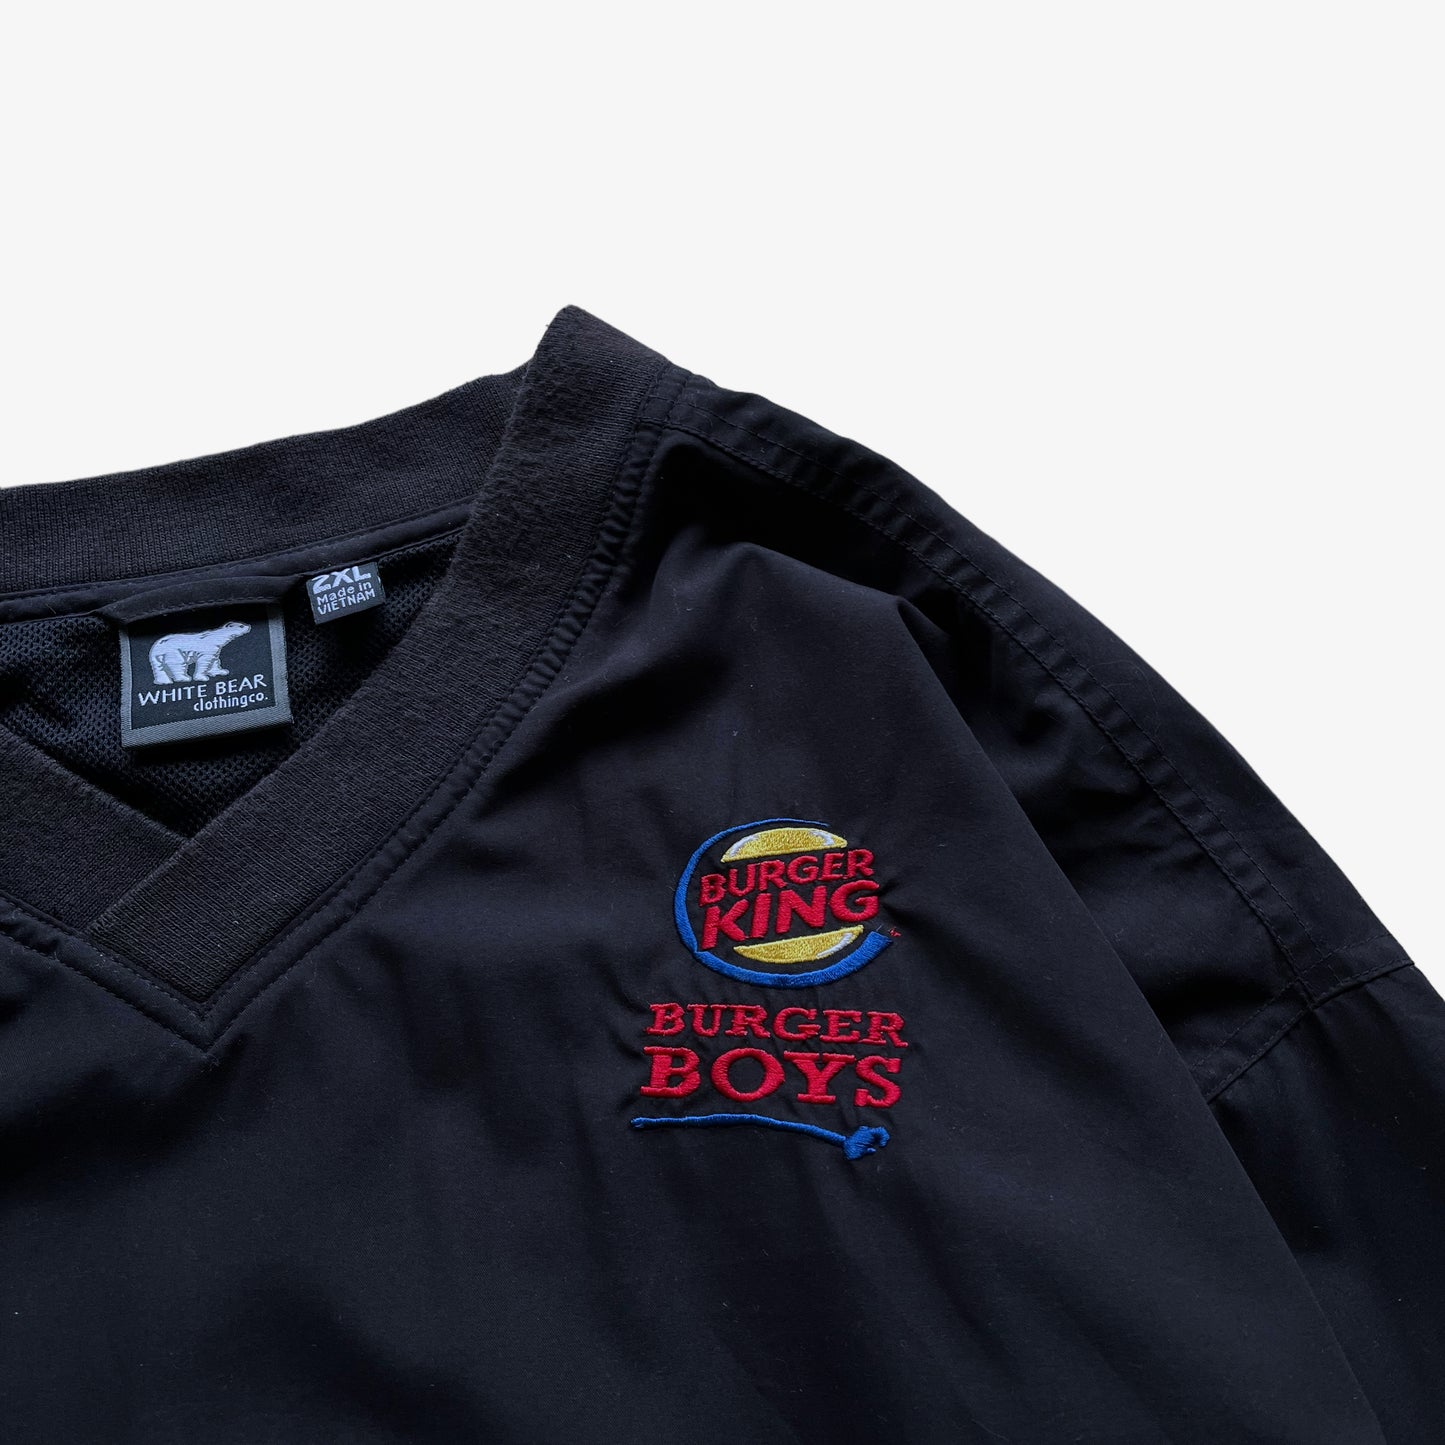 Vintage 90s Burger King Burger Boys V-Neck Pullover Sweatshirt Logo - Casspios Dream